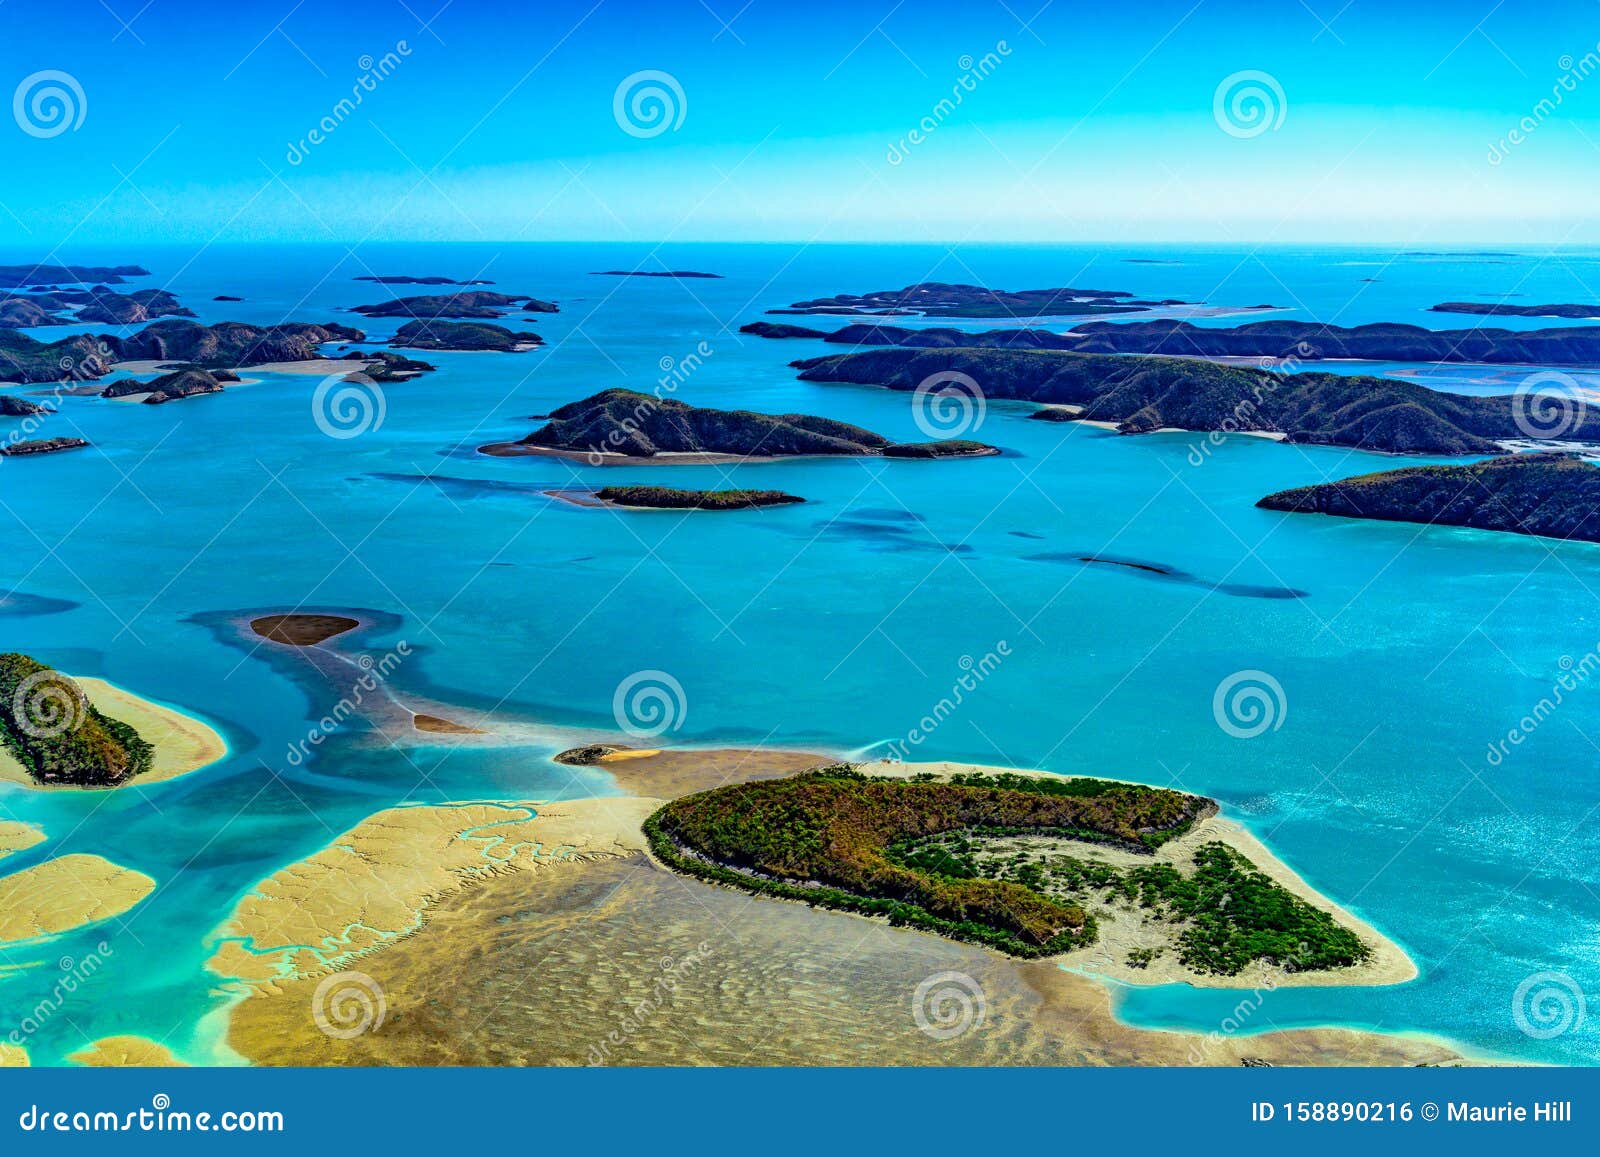 aerial: buccaneer archipeligo of islands in the kimberleys